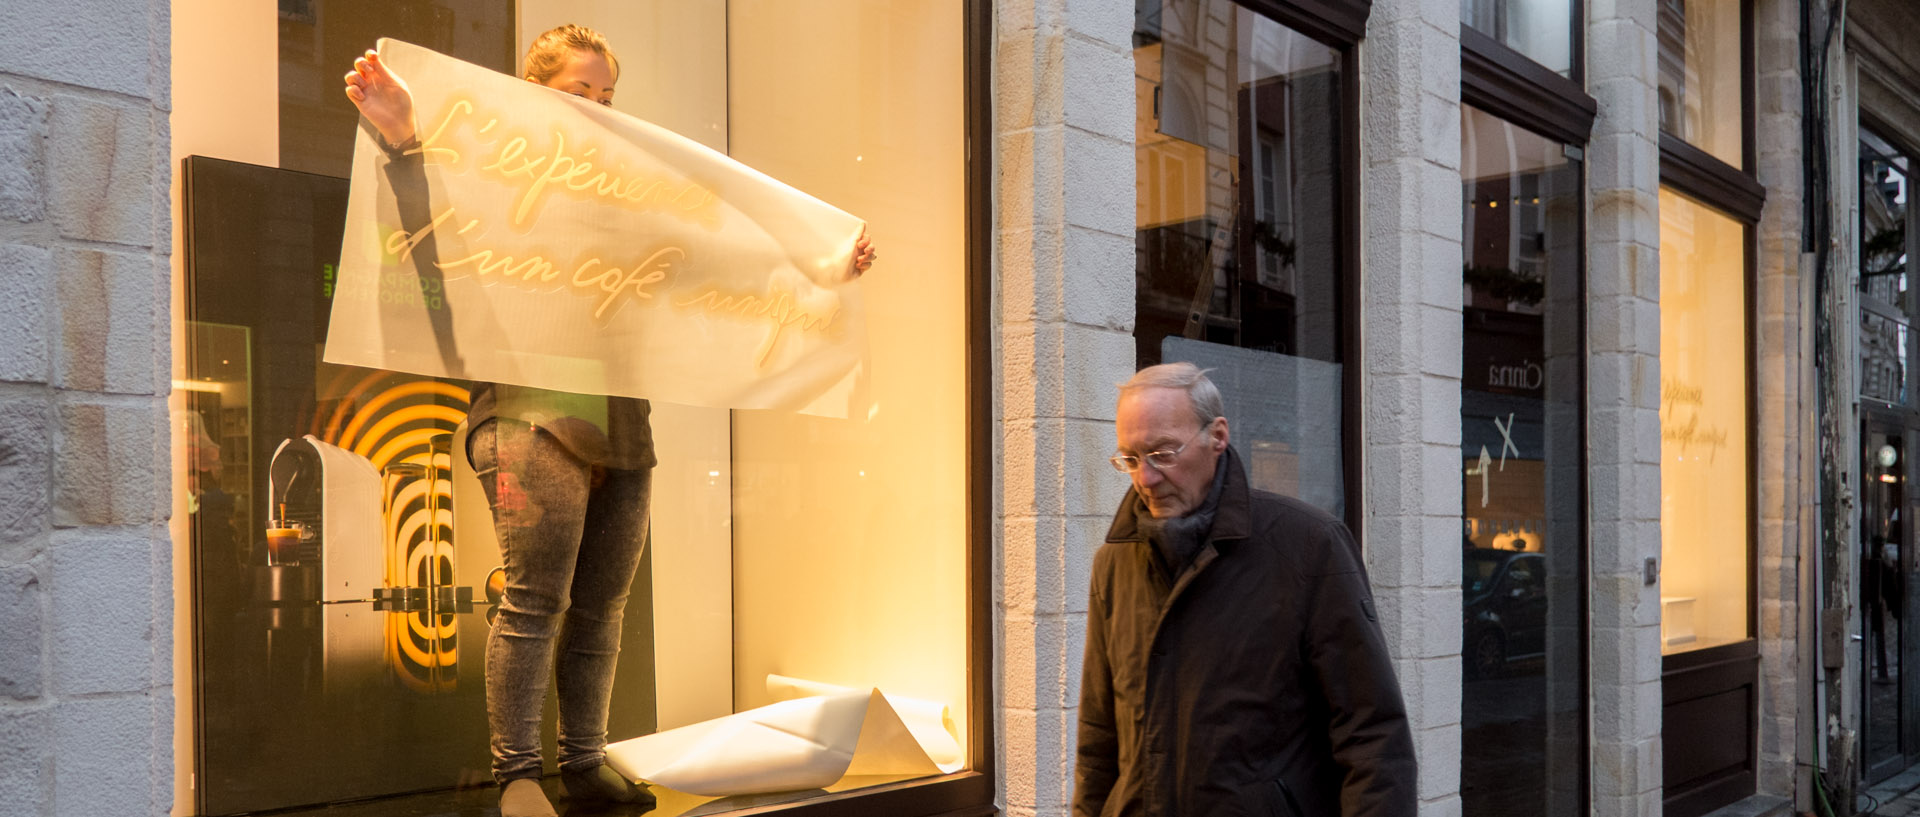 Décoration d'une vitrine Nespresso devant un passant impassible, rue Esquermoise, à Lille.